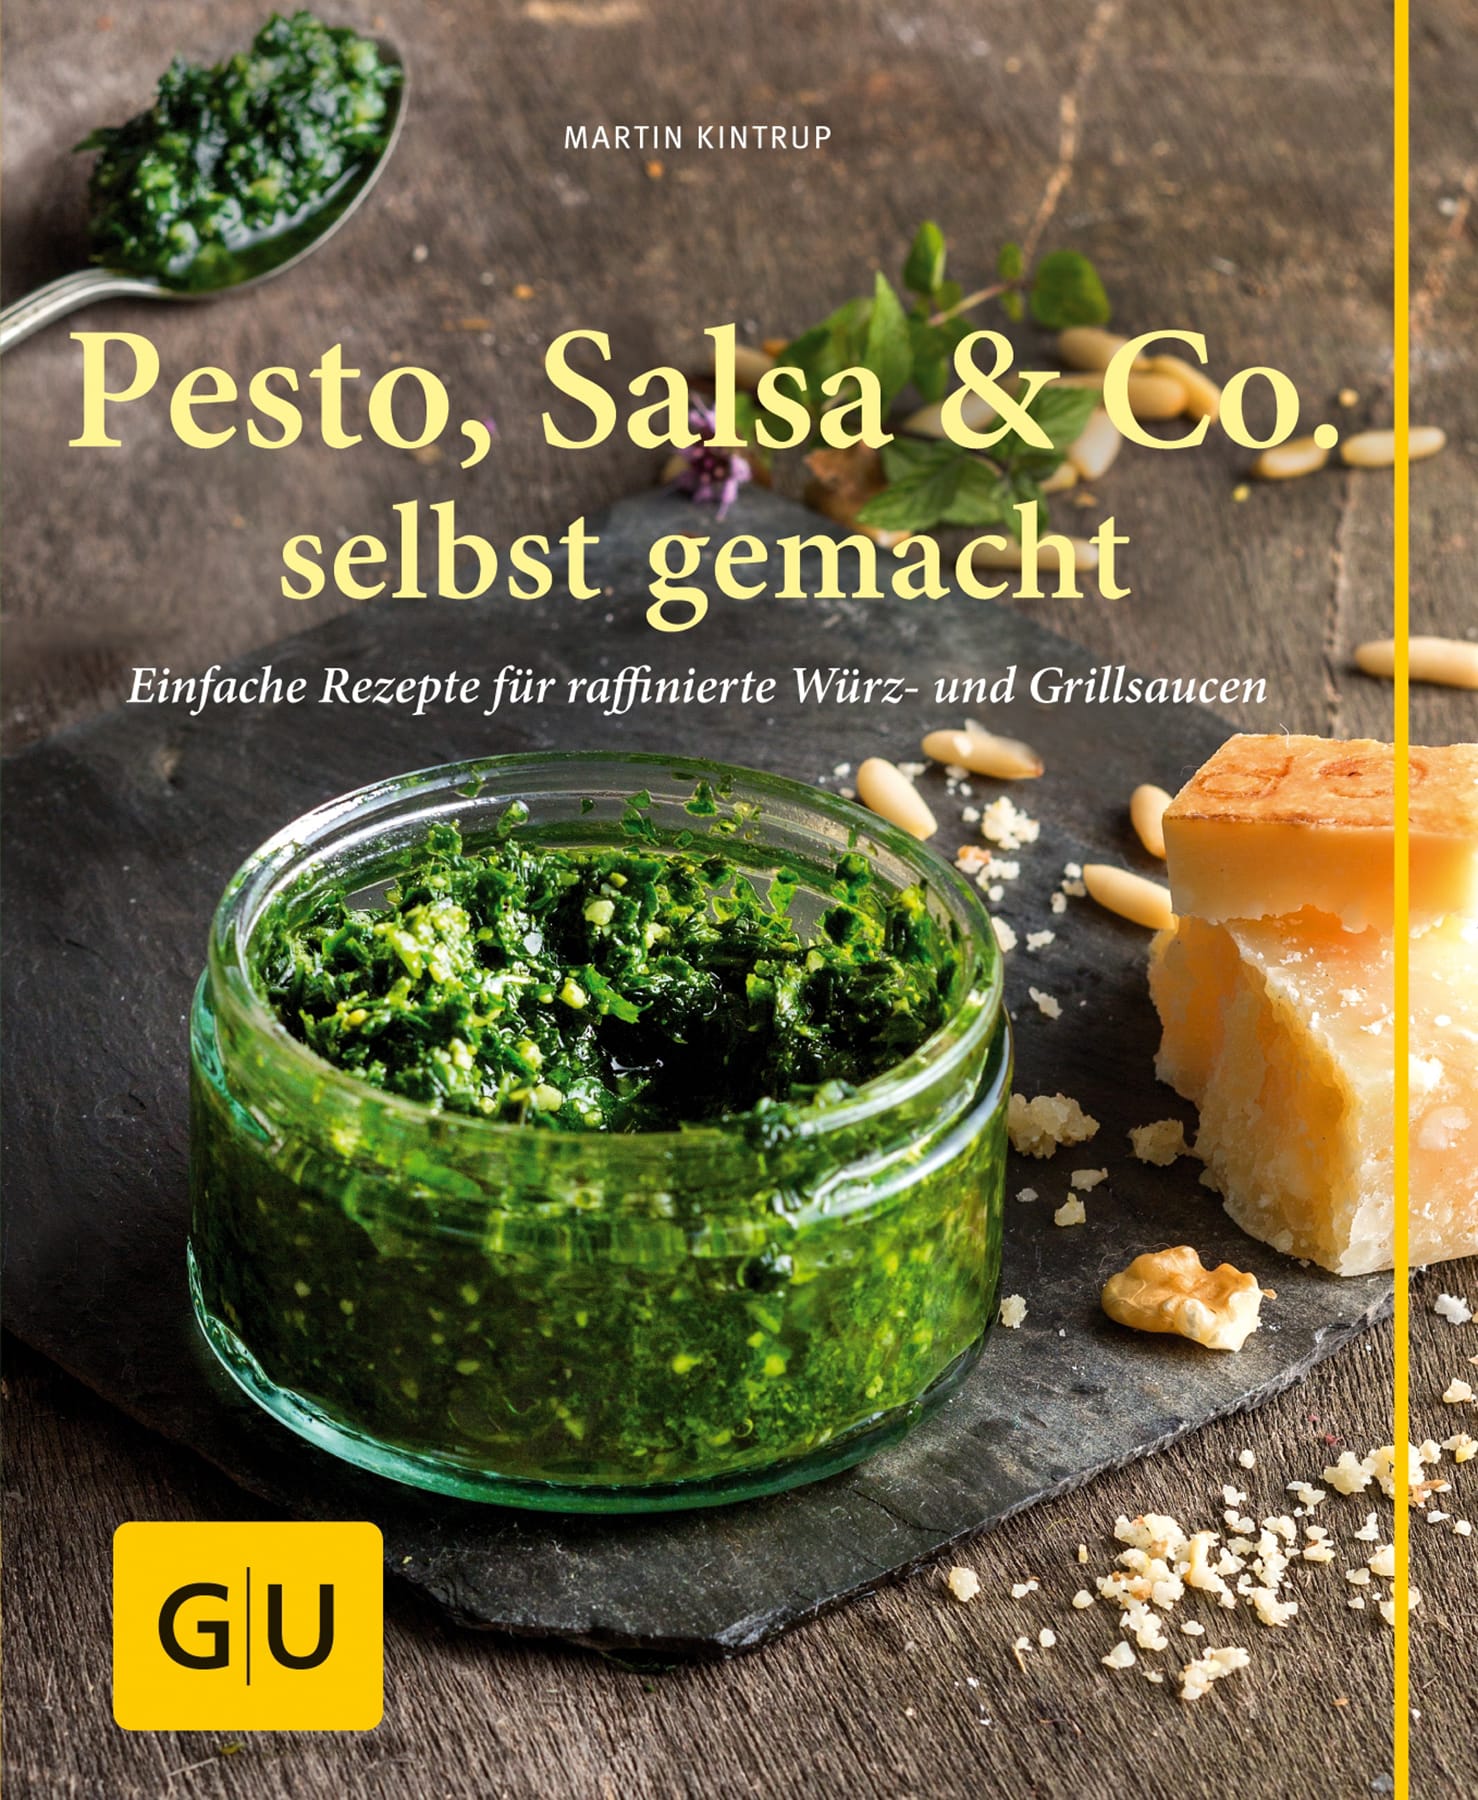 Tipps und Rezepte bietet Kochbuchautor Martin Kintrup in "Pesto, Salsa & Co. selbst gemacht: Einfache Rezepte für Würz- und Grillsaucen", GU Verlag, 12,99 Euro.